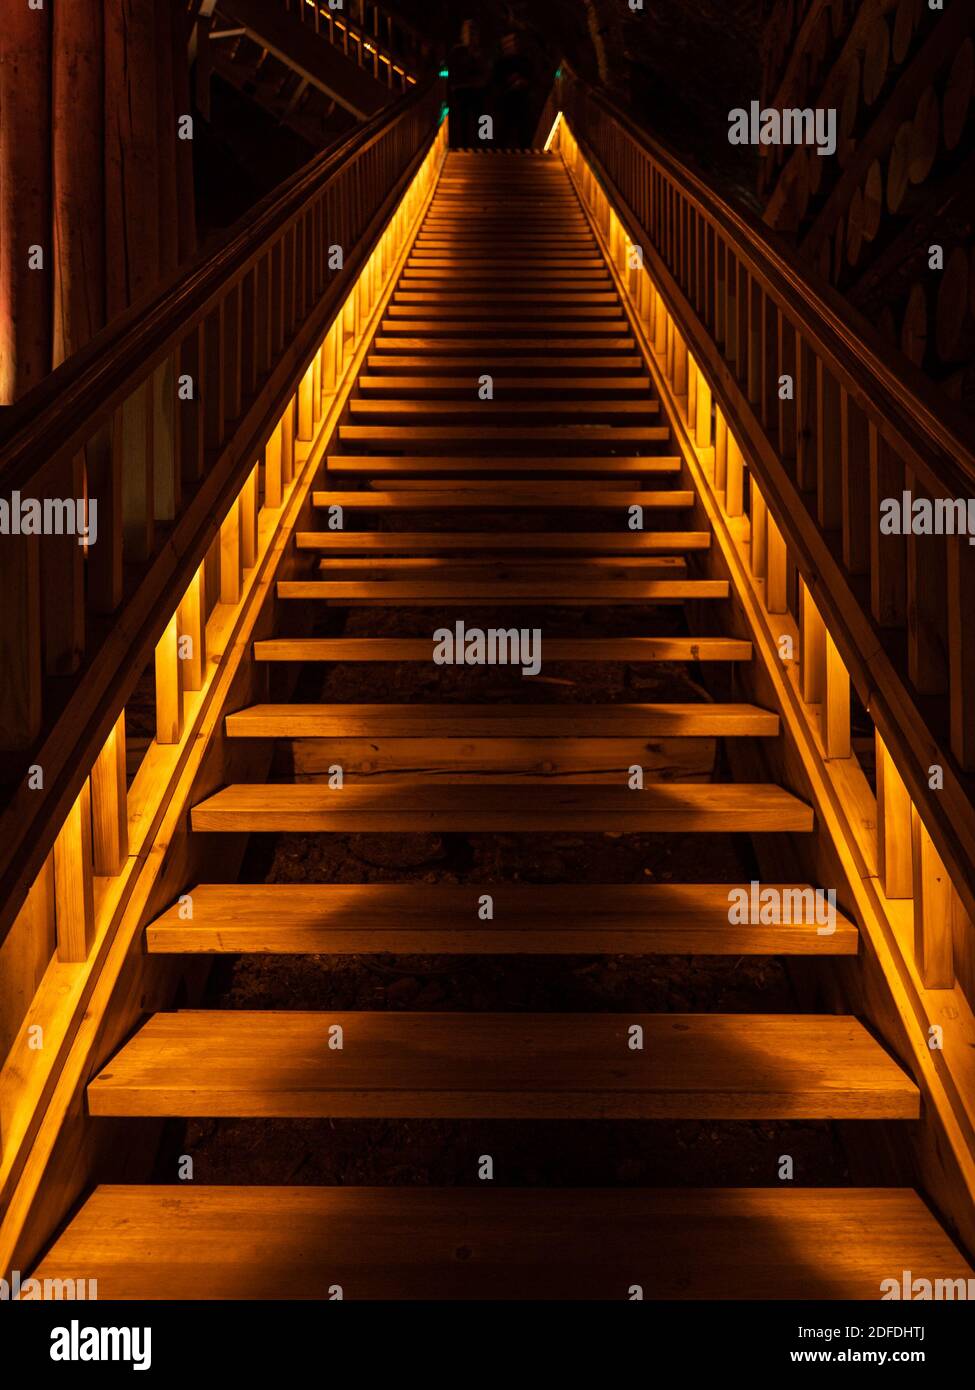 Imagen de madera, subir a la oscuridad un camino de aspecto solitario, de que habrá algo misterioso bajo las sombras, Dim luz Fotografía de stock Alamy